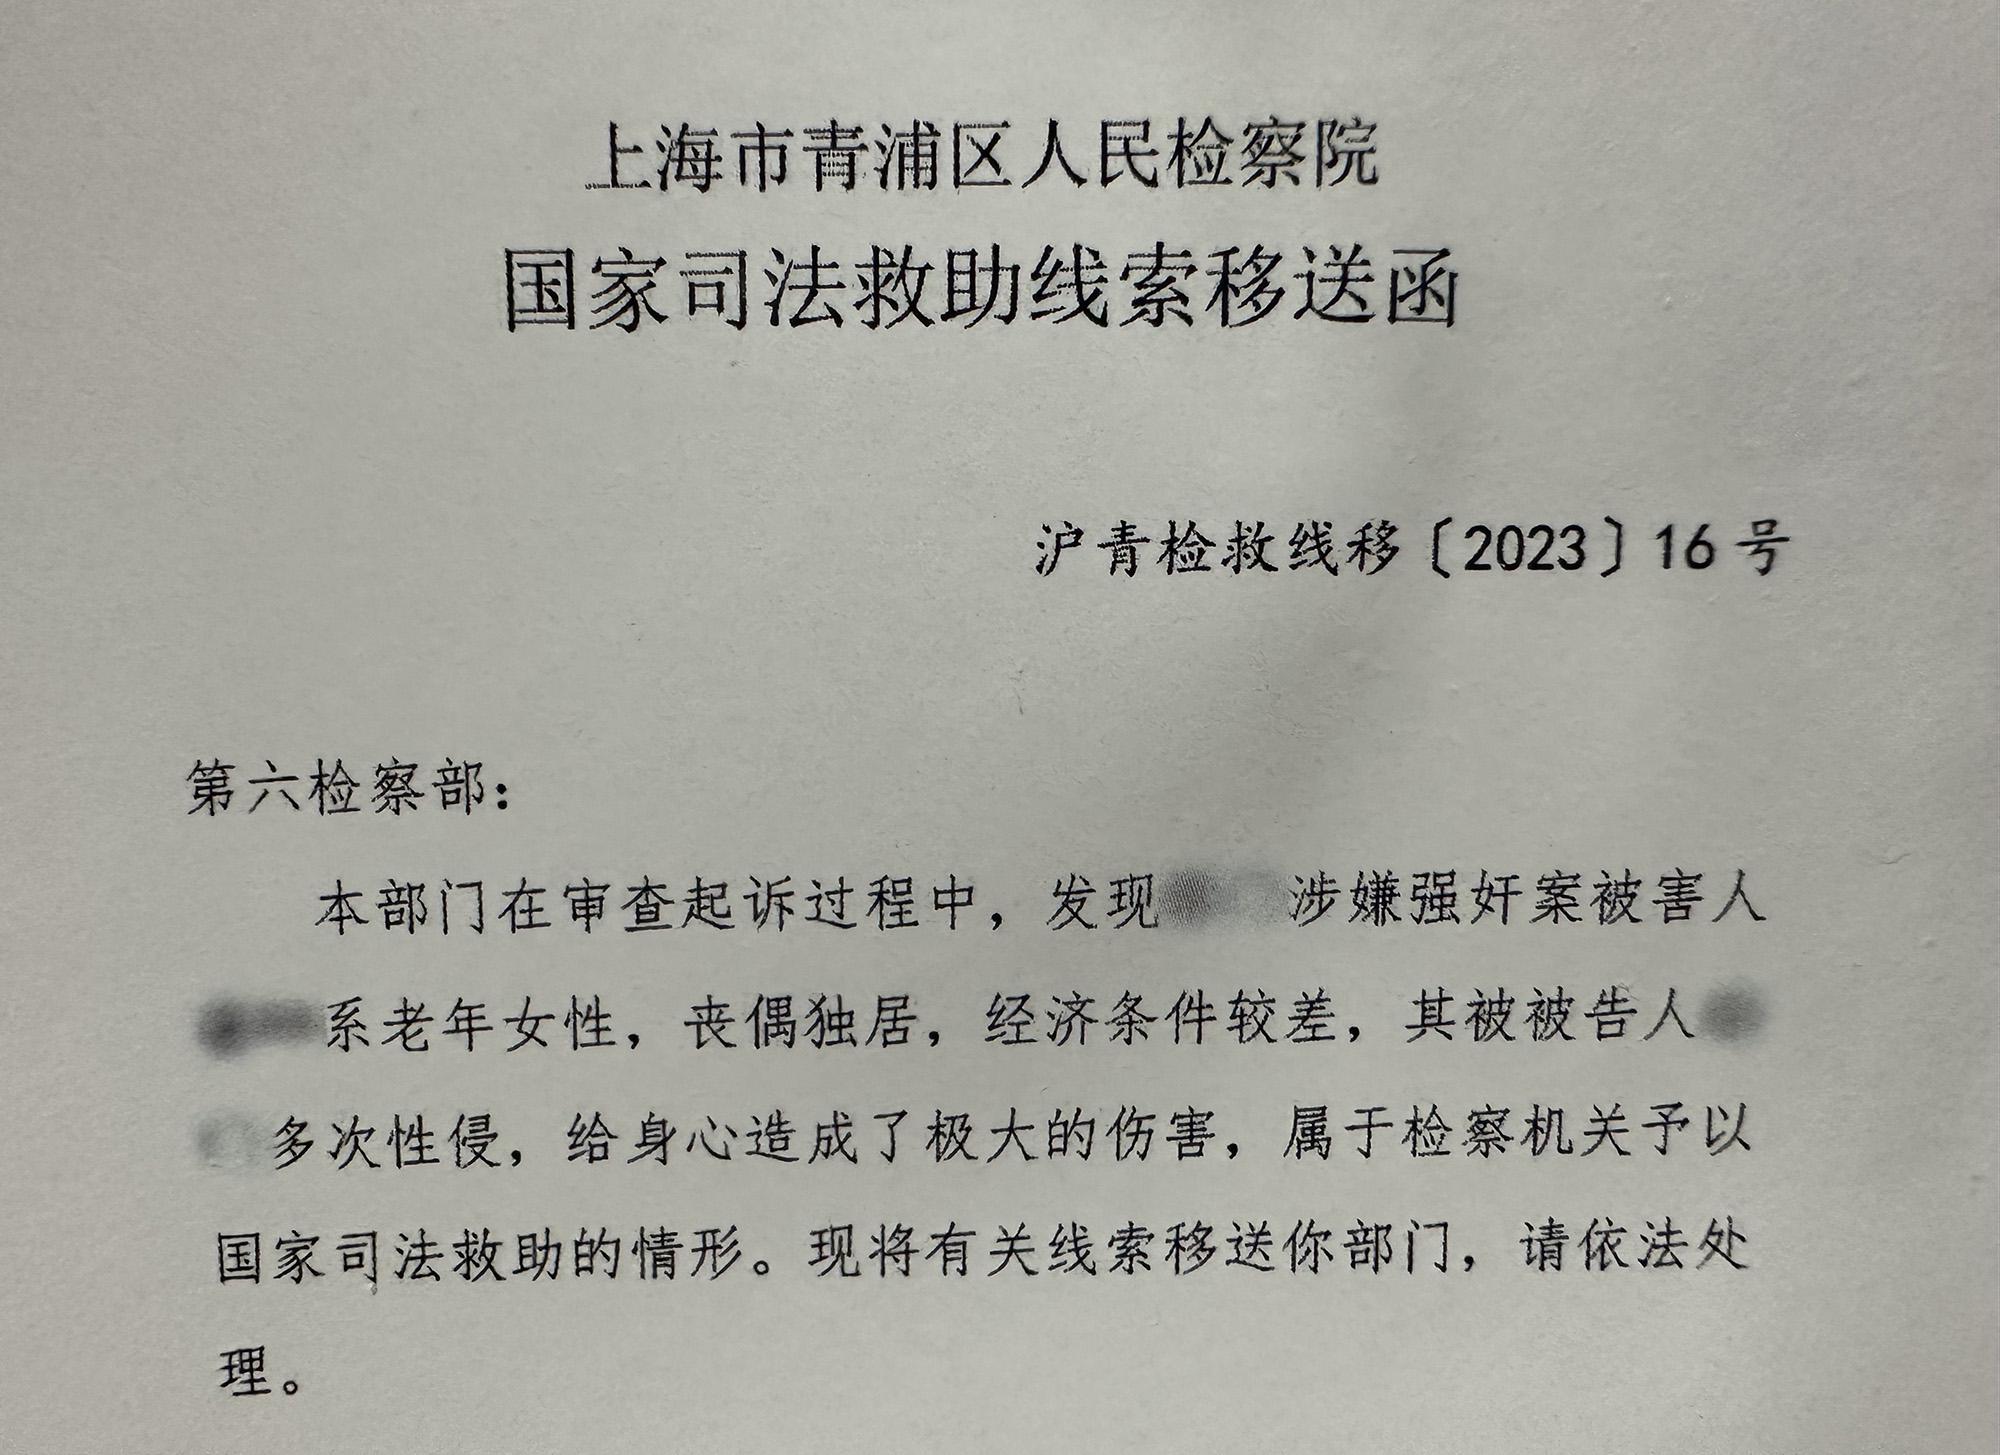 中年男子3次强奸上海七旬独居老妇，检察机关司法救助被害人